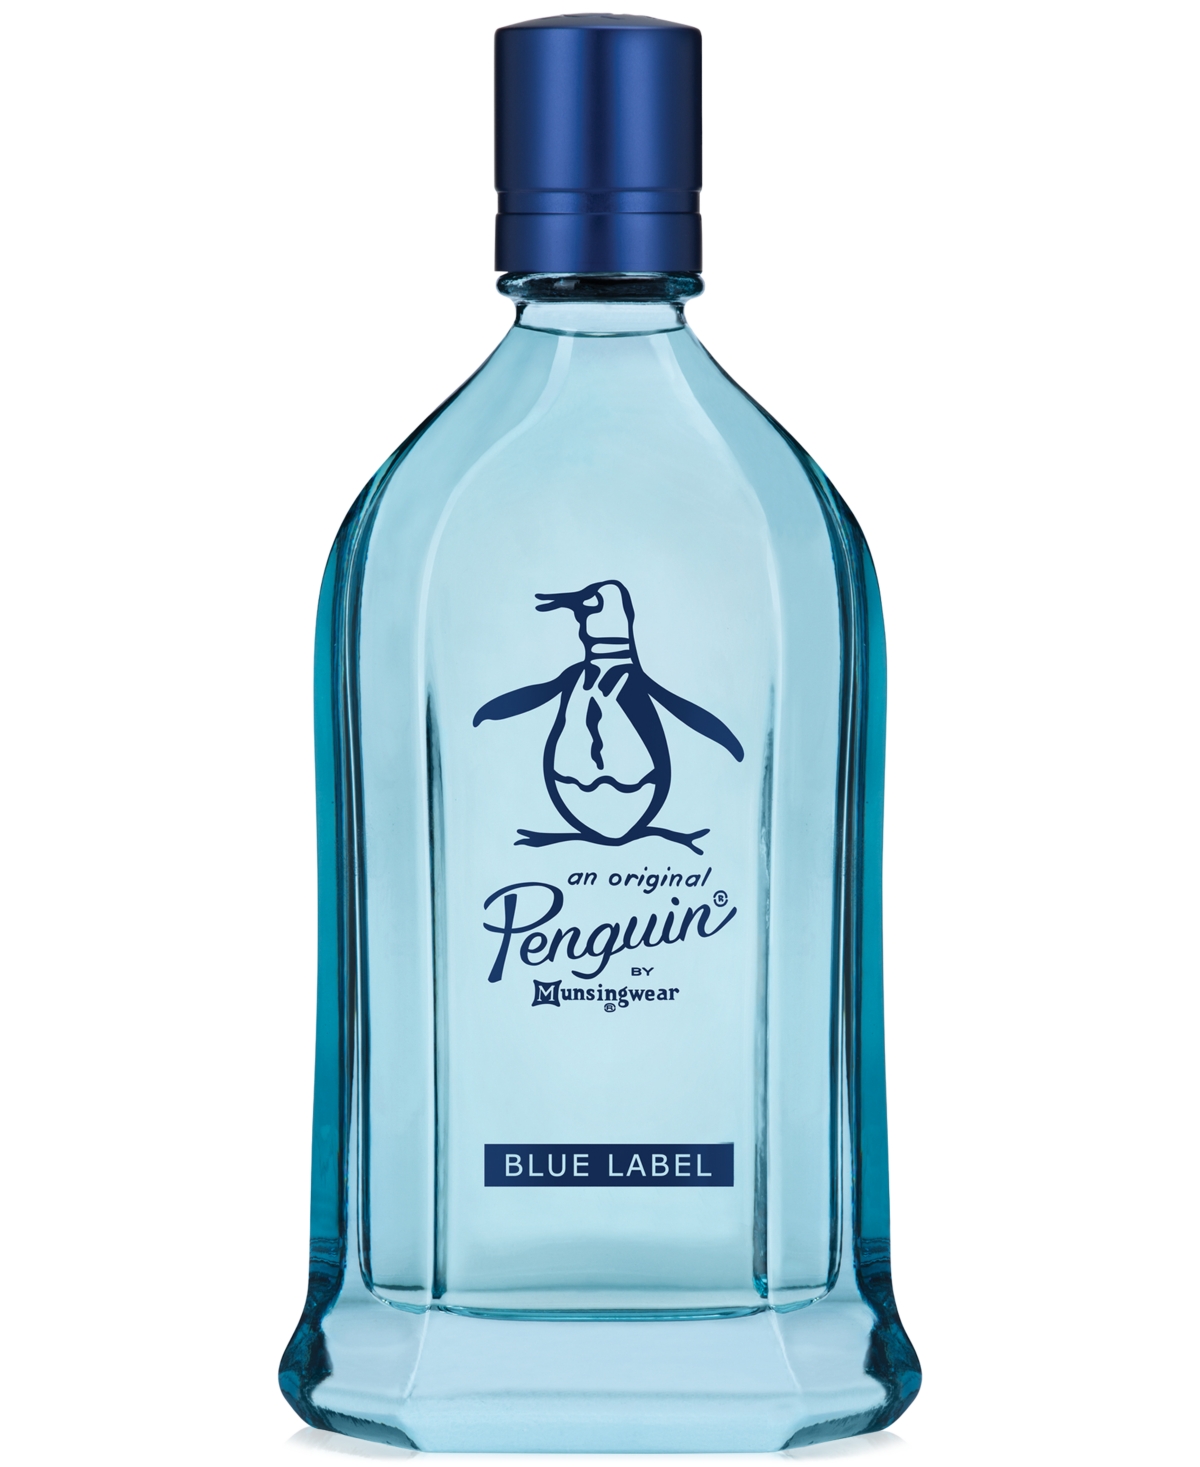 Penguin Men's Blue Label Eau de Toilette Spray, 3.4 oz.